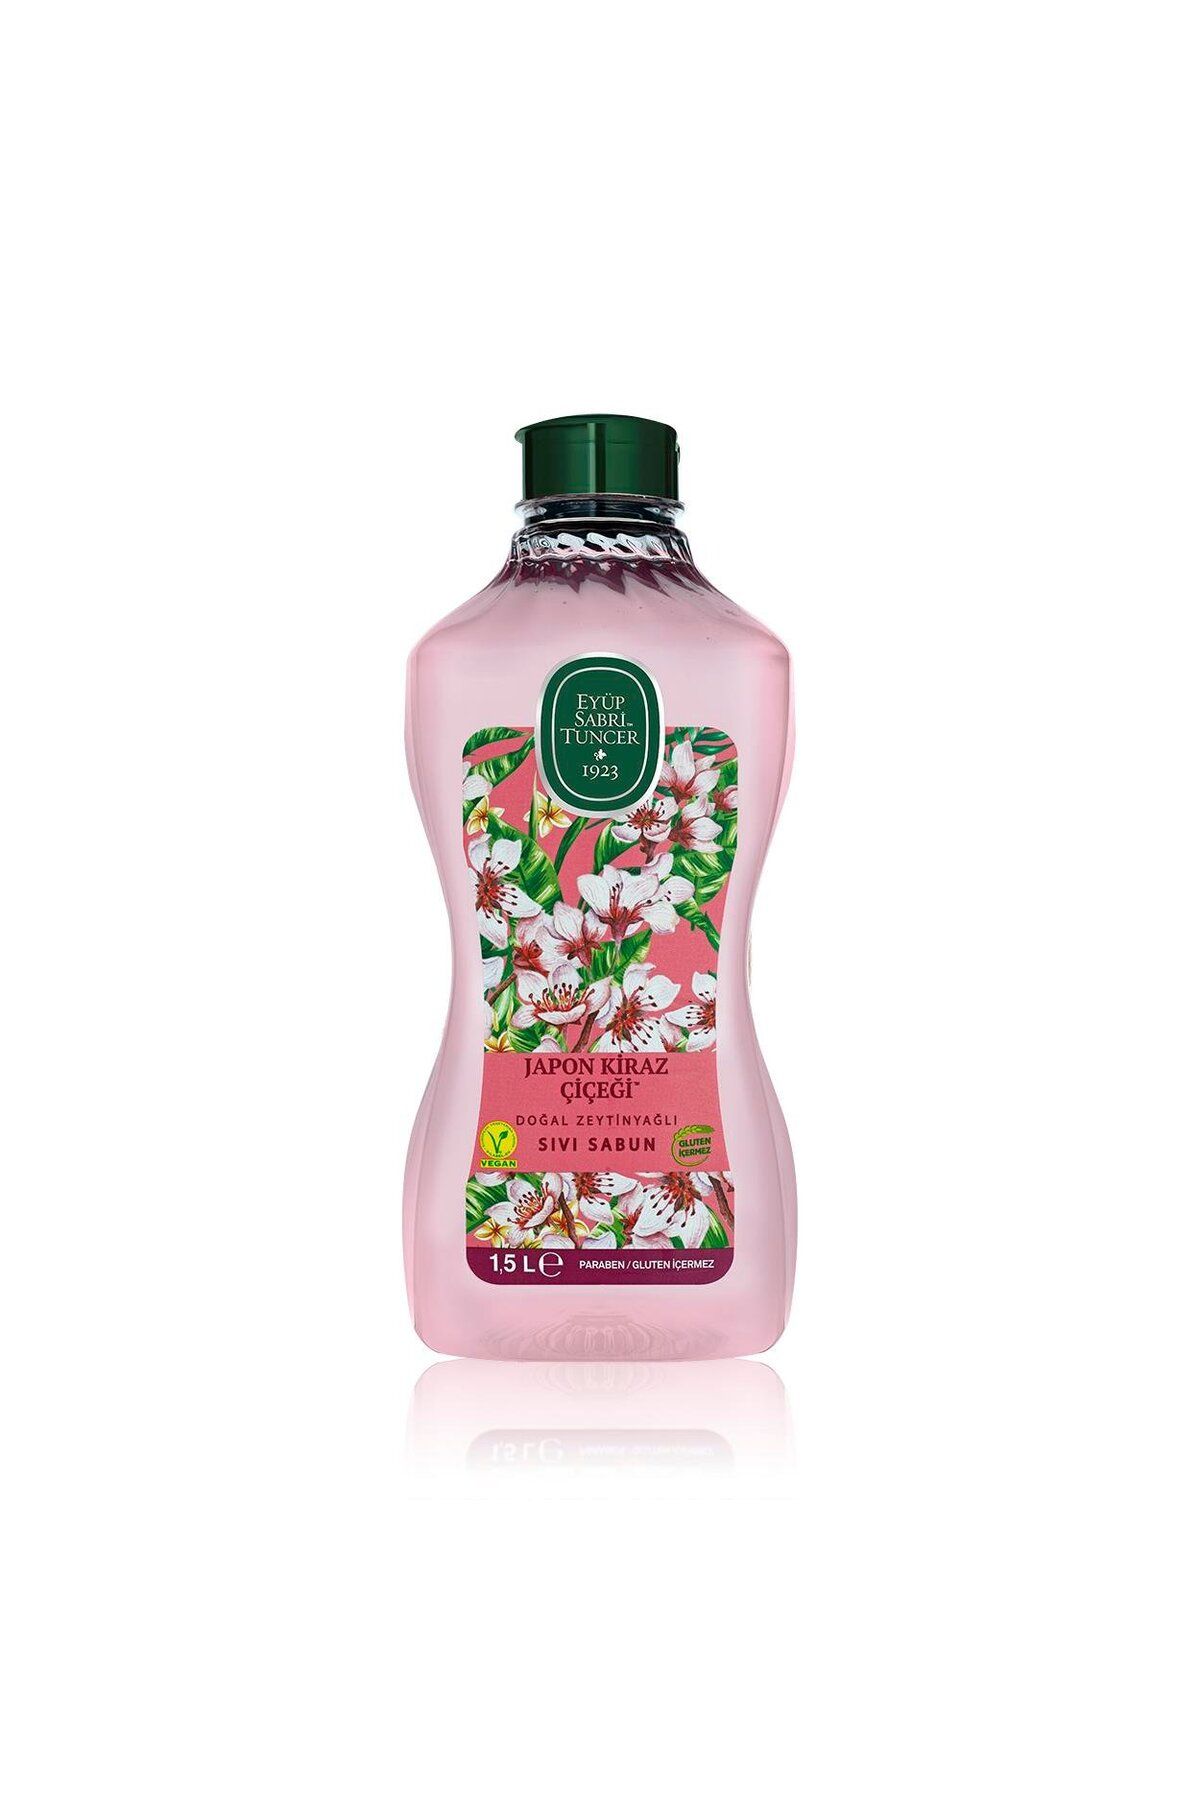 Eyüp Sabri Tuncer Japon Kiraz Çiçeği Doğal Zeytinyağlı Sıvı Sabun 1.5 Lt